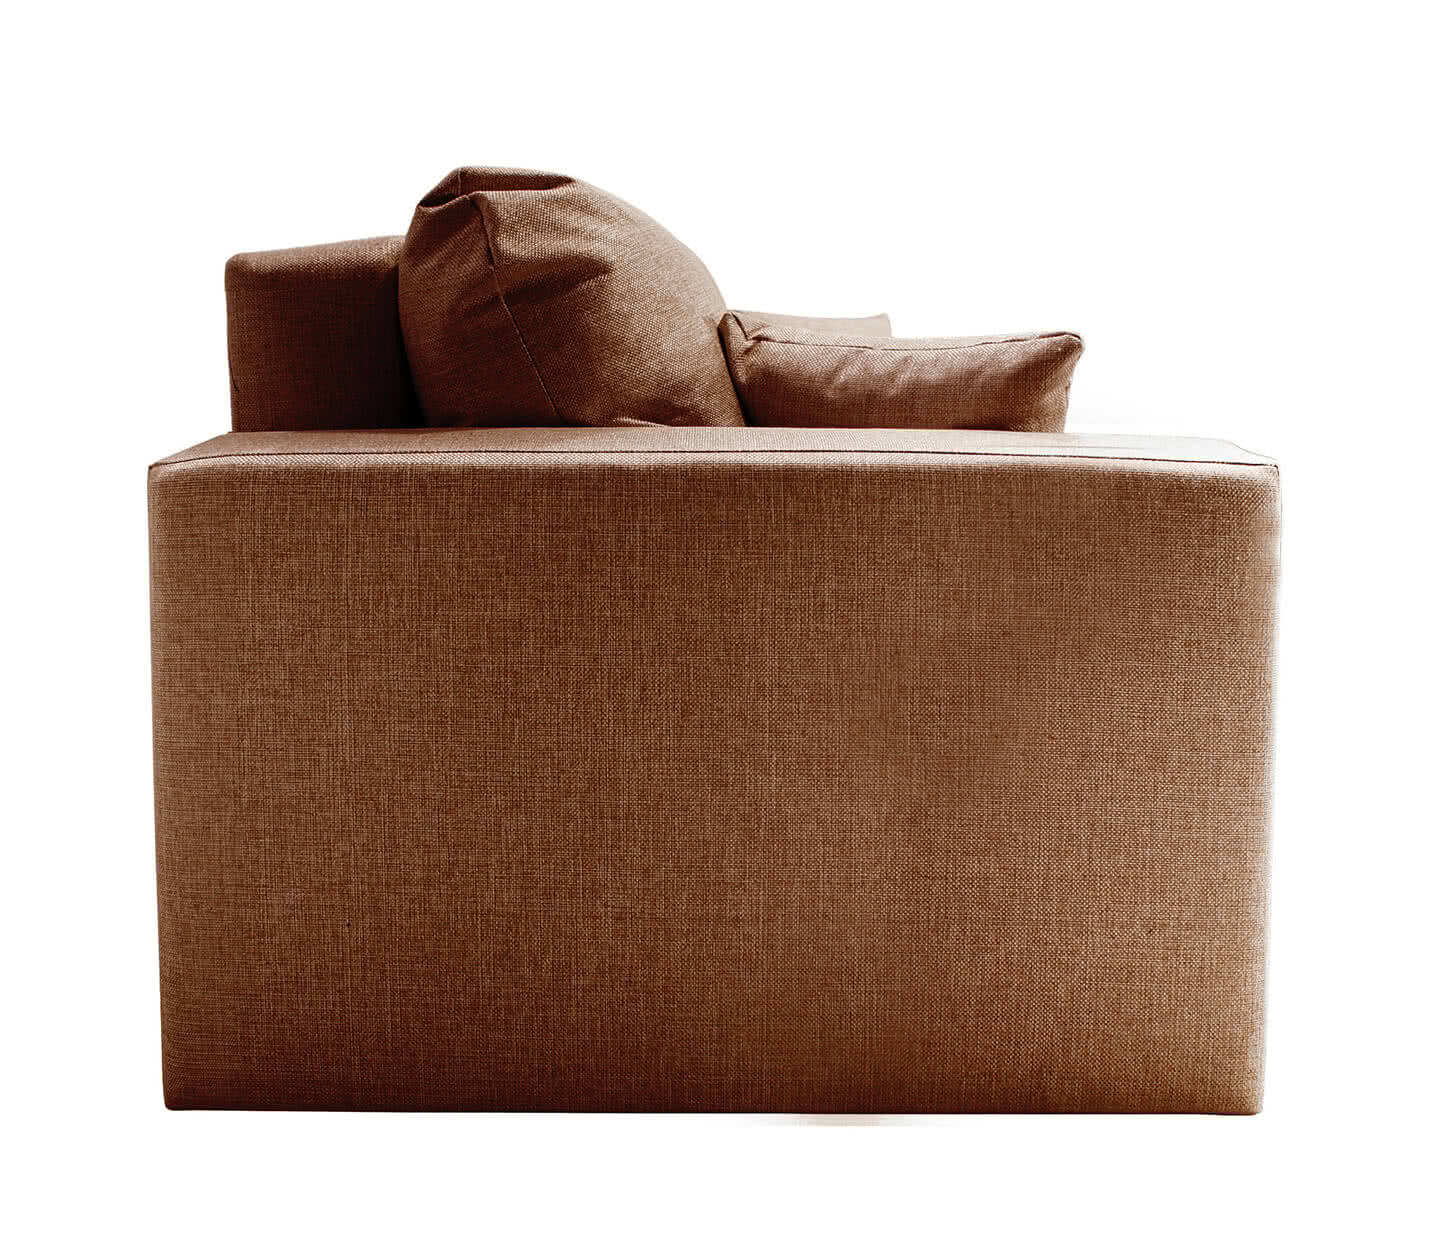 Купить диван FotoDivan Диван Ливерпуль, Коричневый 160 х 195 см Коричневый дешево на официальном сайте